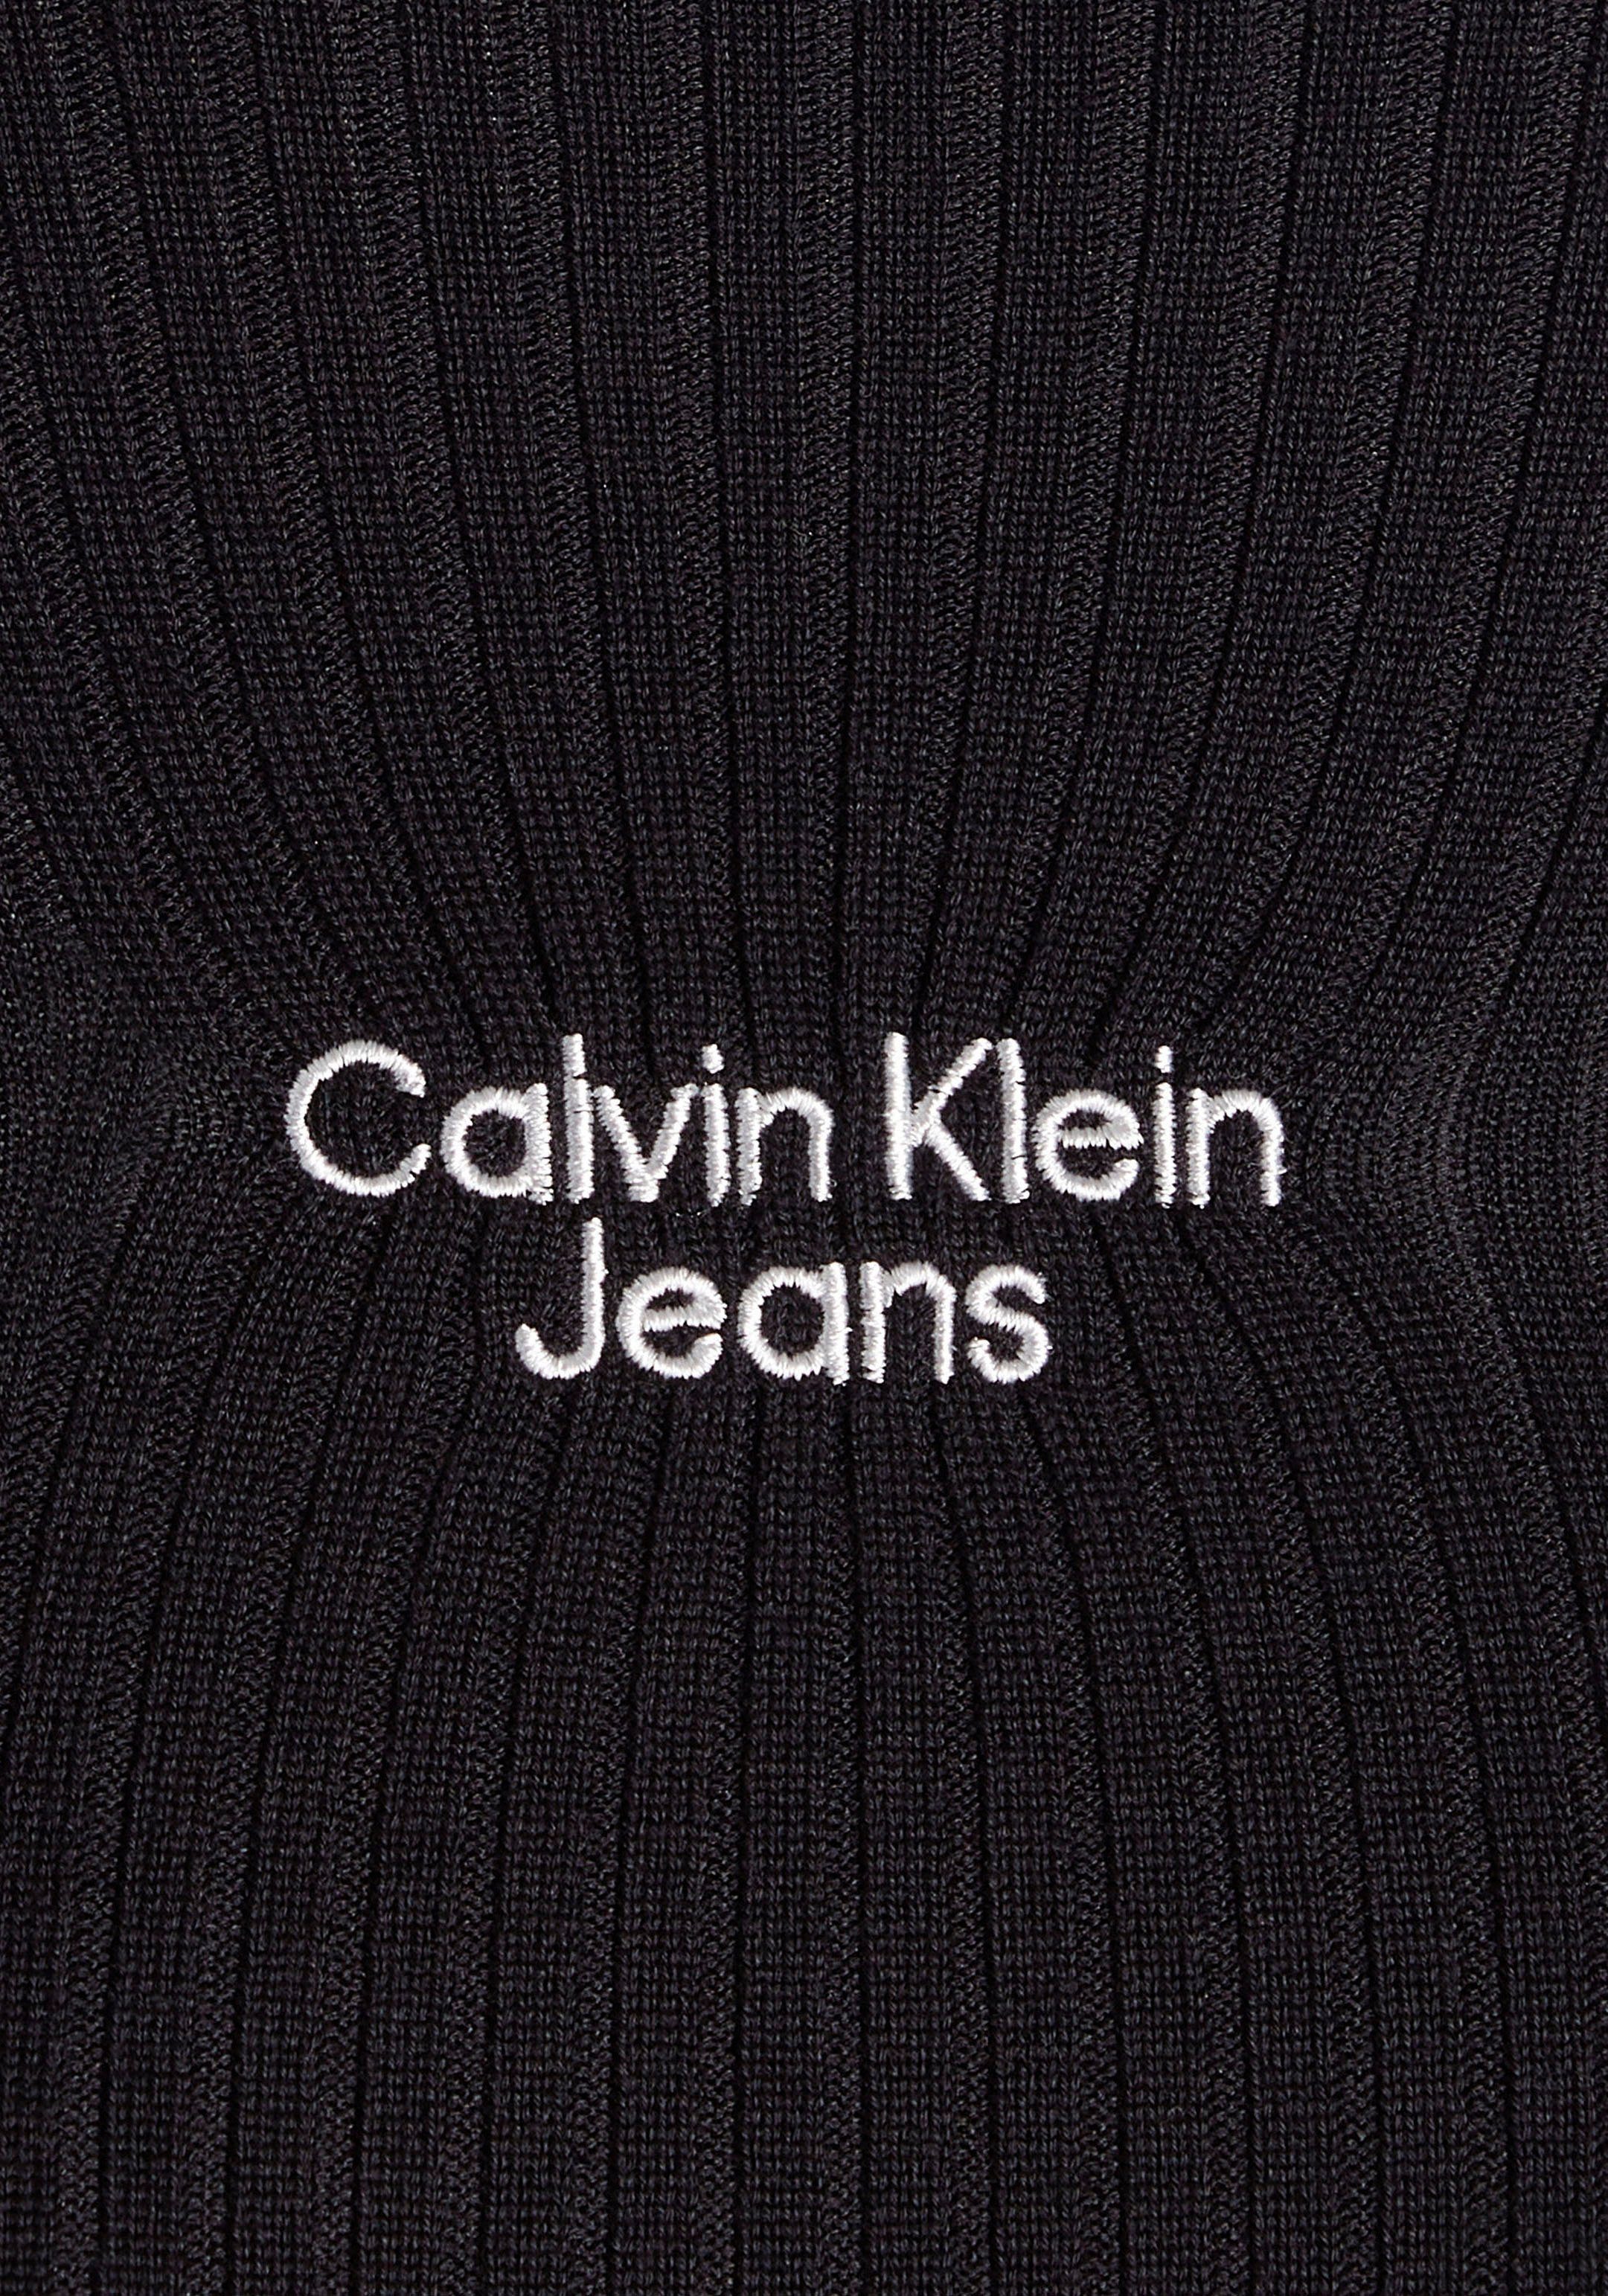 SWEATER DRESS STACKED mit Klein Jeans Bodykleid Markenlogo Calvin Brust Klein der LOGO Calvin auf Ivory TIGHT